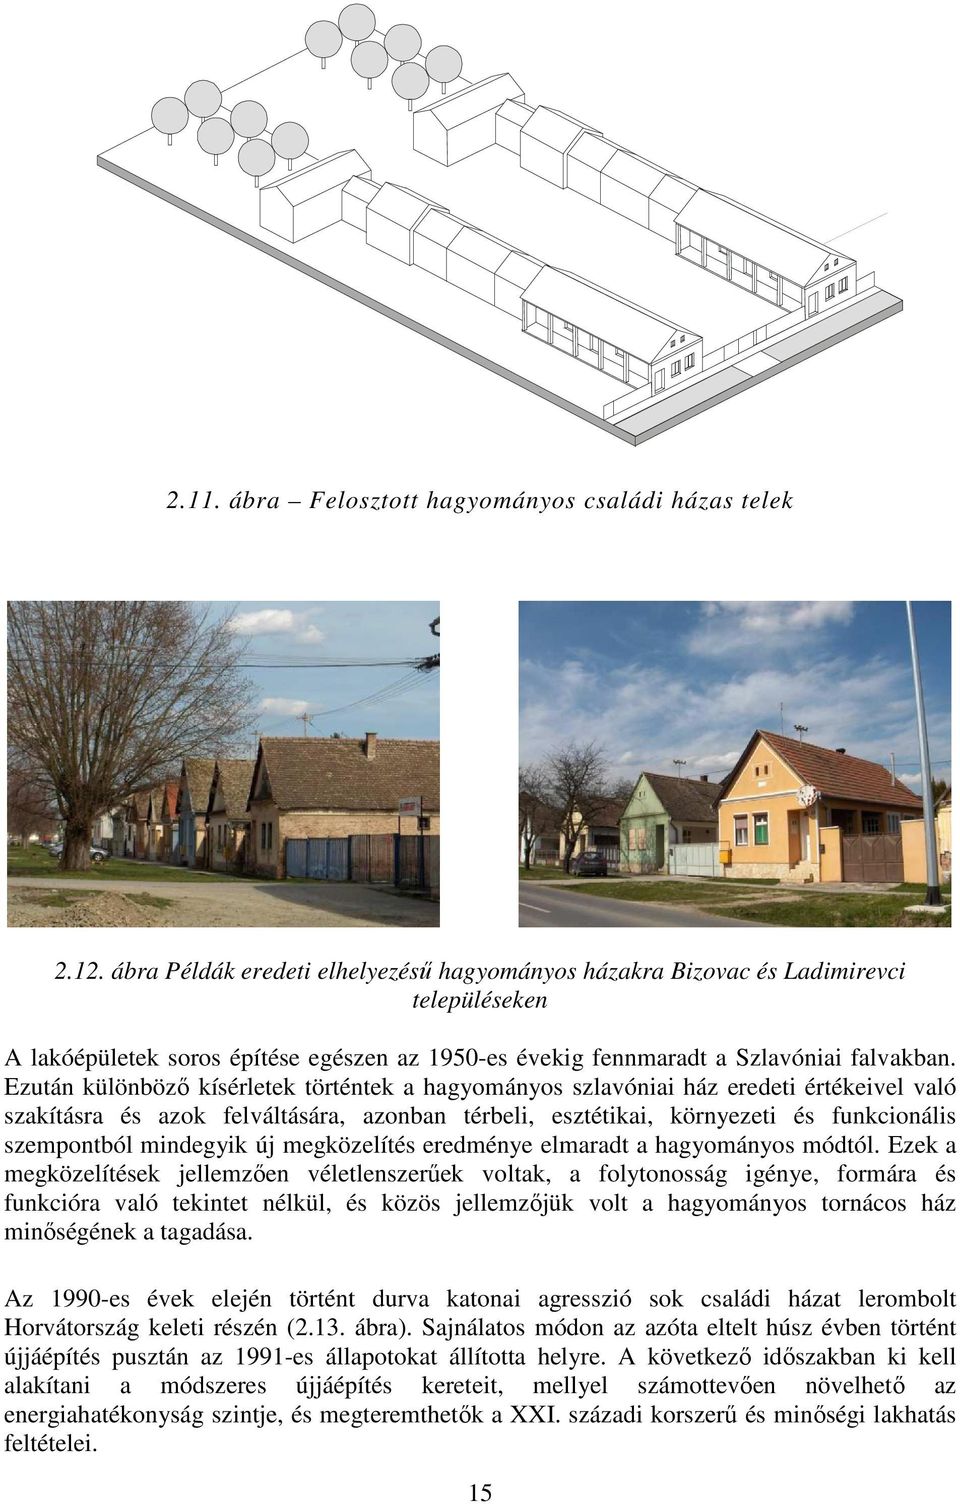 Ezután különböző kísérletek történtek a hagyományos szlavóniai ház eredeti értékeivel való szakításra és azok felváltására, azonban térbeli, esztétikai, környezeti és funkcionális szempontból